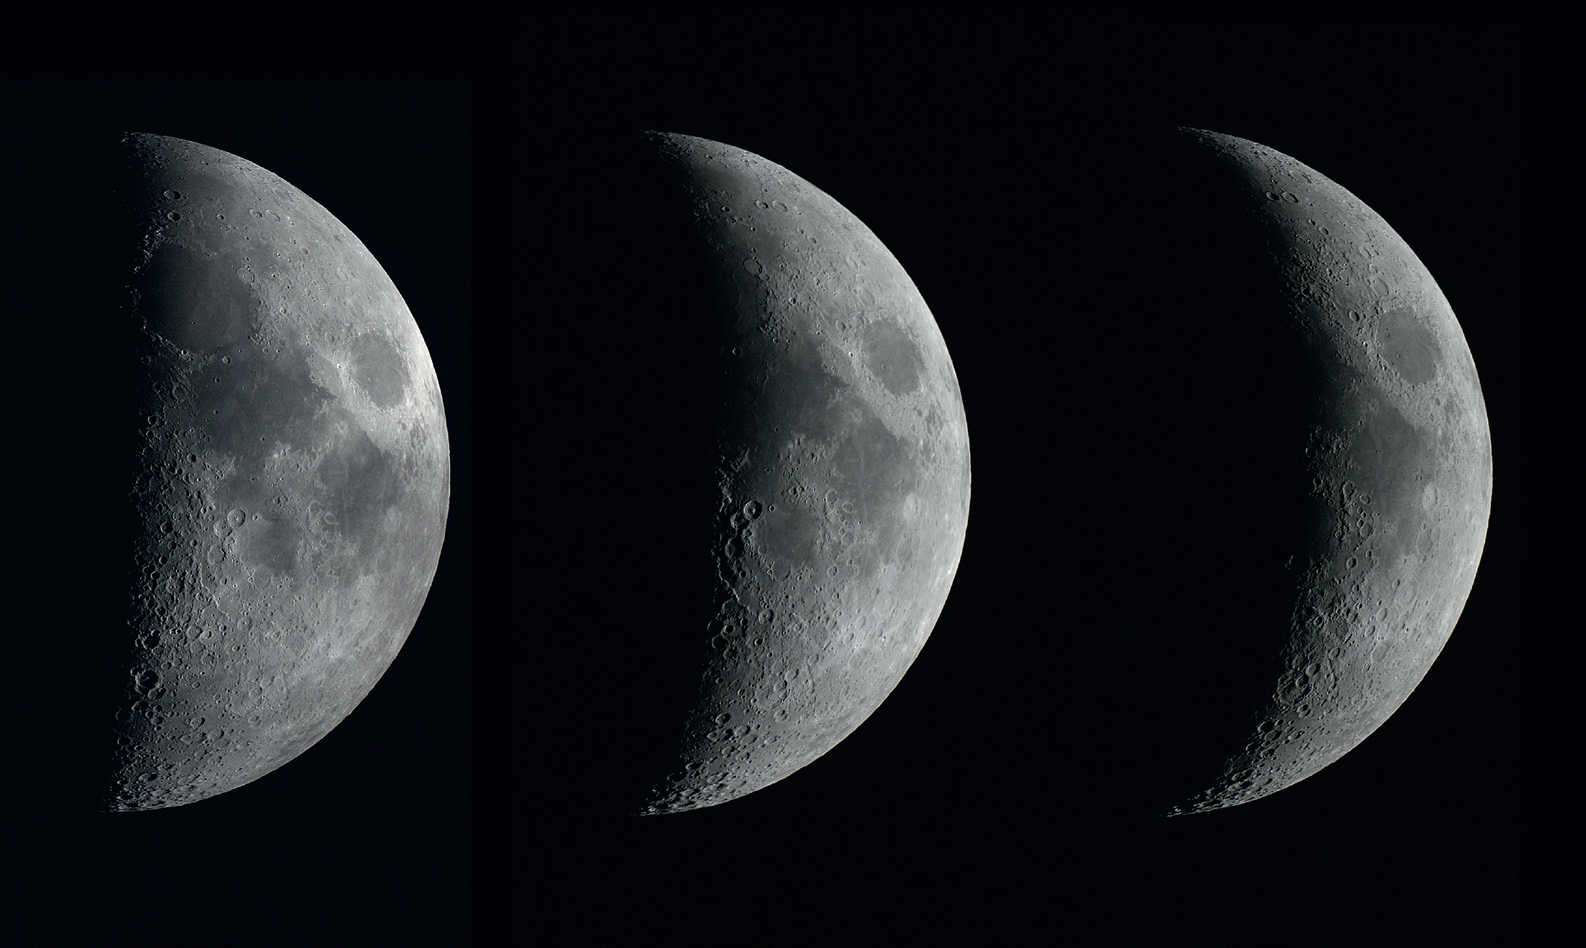 Fazele Lunii în creștere în trei zile consecutive. Fotografiile au fost realizate cu o cameră foto DSLR Canon 450D pe un refractor cu deschiderea de 102 mm și distanța focală de 1.000 mm, la intervale de câte o zi. U. Dittler